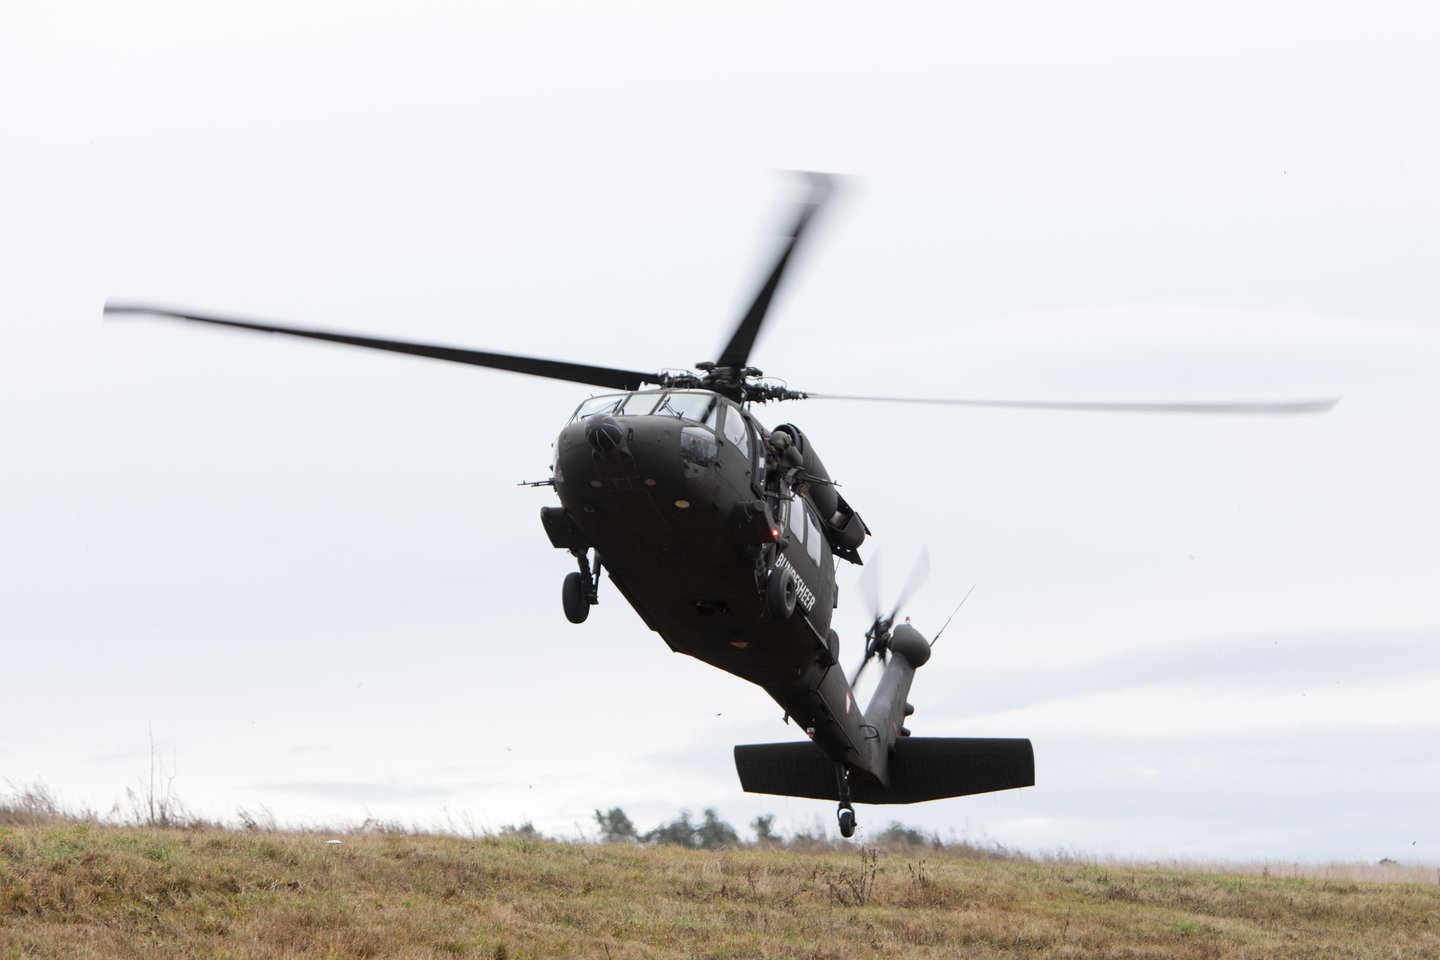  Lietuvos vyriausybė tikisi, kad JAV administracija galėtų paremti „Black Hawk“ pirkimą per JAV paramos saugumo srityje fondus.<br> ImagoImages/Scanpix nuotr.